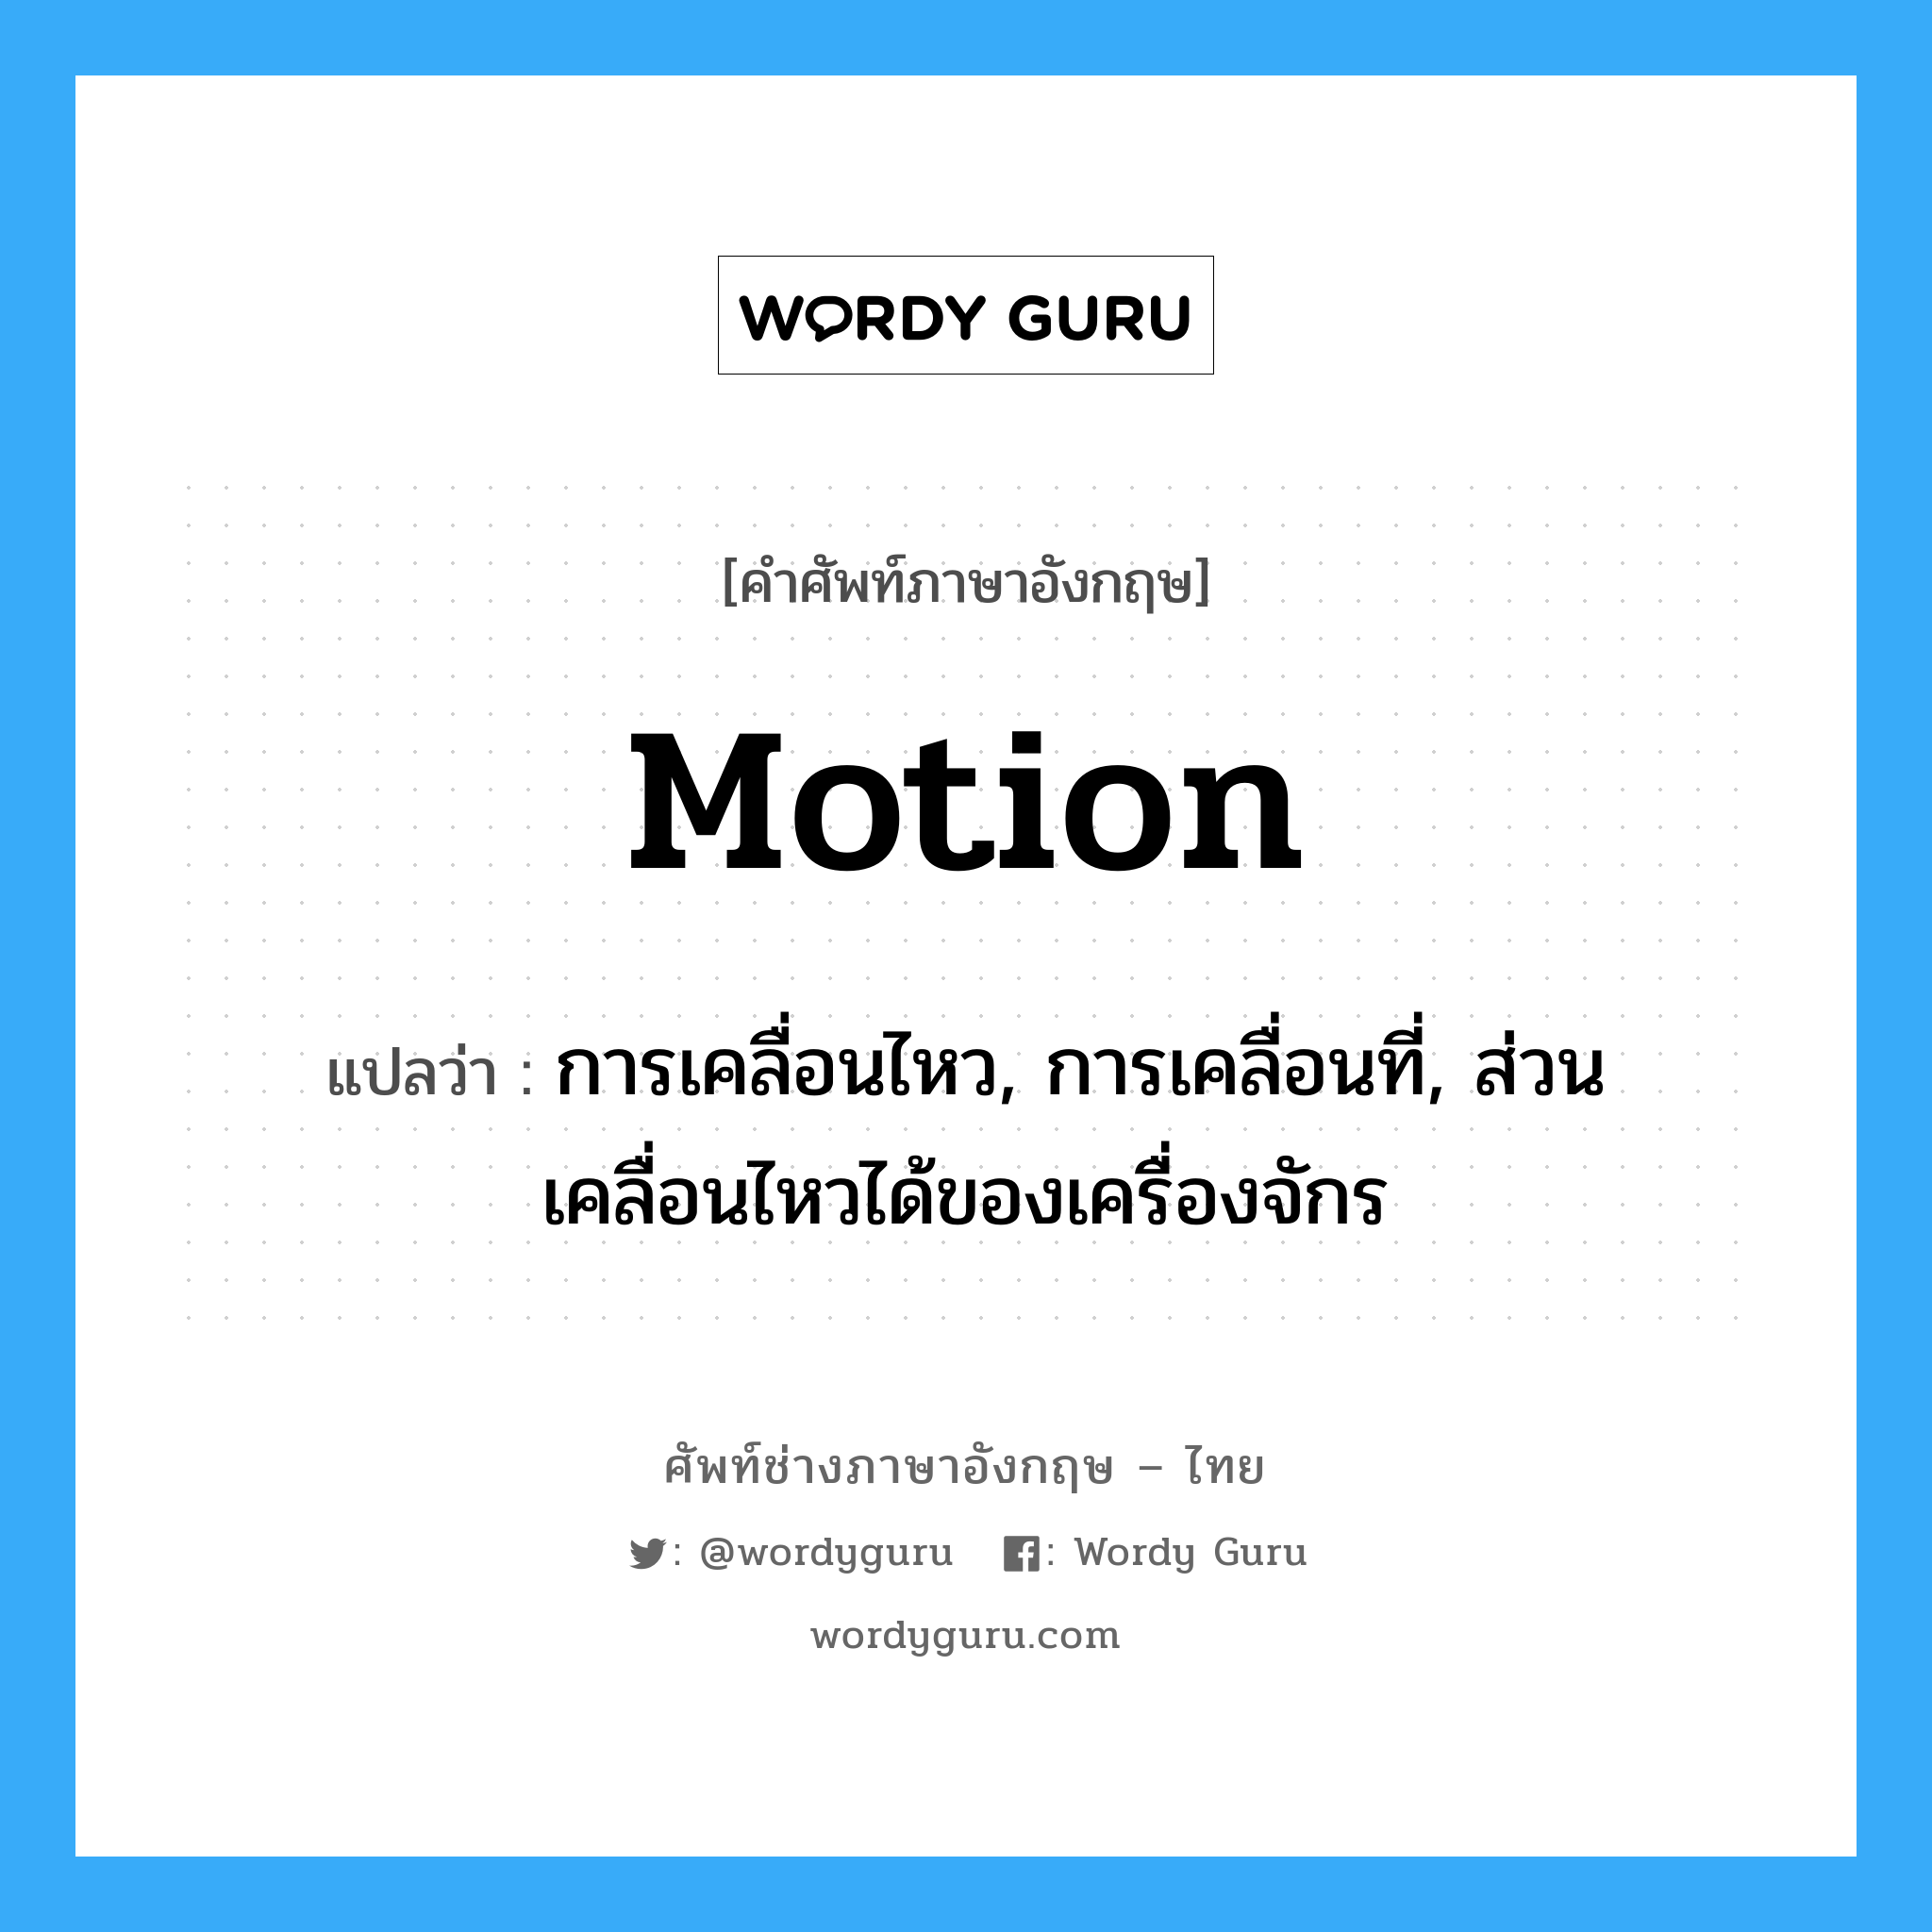 motion แปลว่า?, คำศัพท์ช่างภาษาอังกฤษ - ไทย motion คำศัพท์ภาษาอังกฤษ motion แปลว่า การเคลื่อนไหว, การเคลื่อนที่, ส่วนเคลื่อนไหวได้ของเครื่องจักร